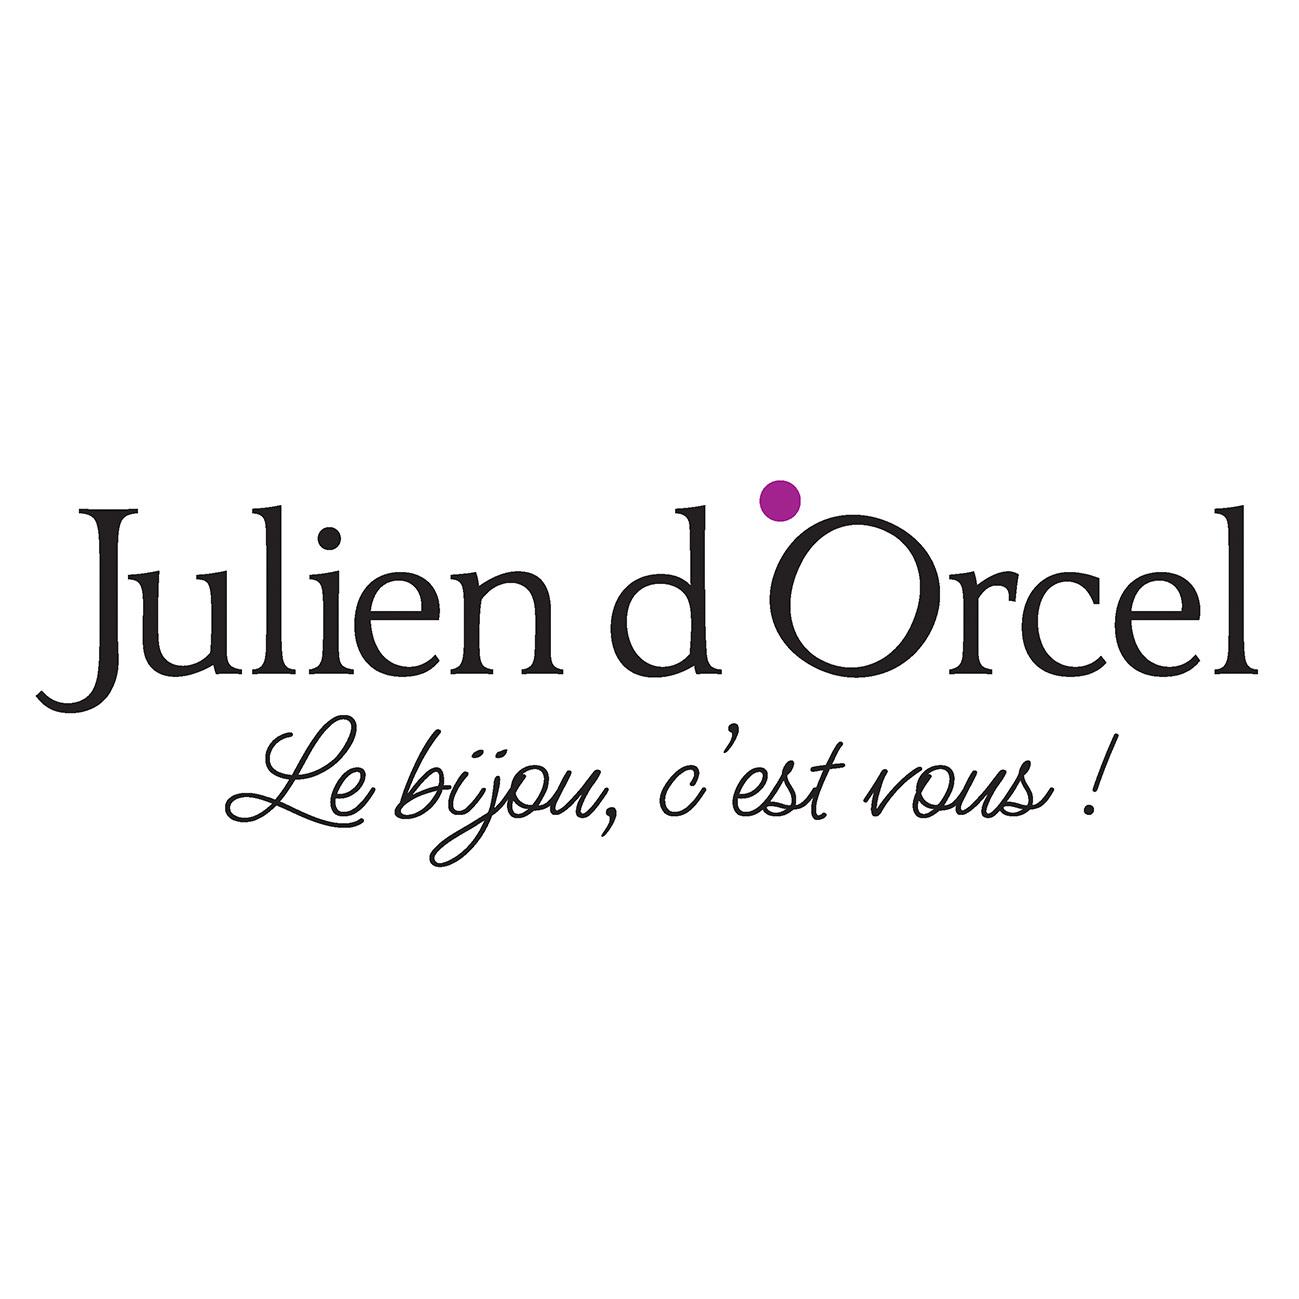 Julien D'orcel Agen